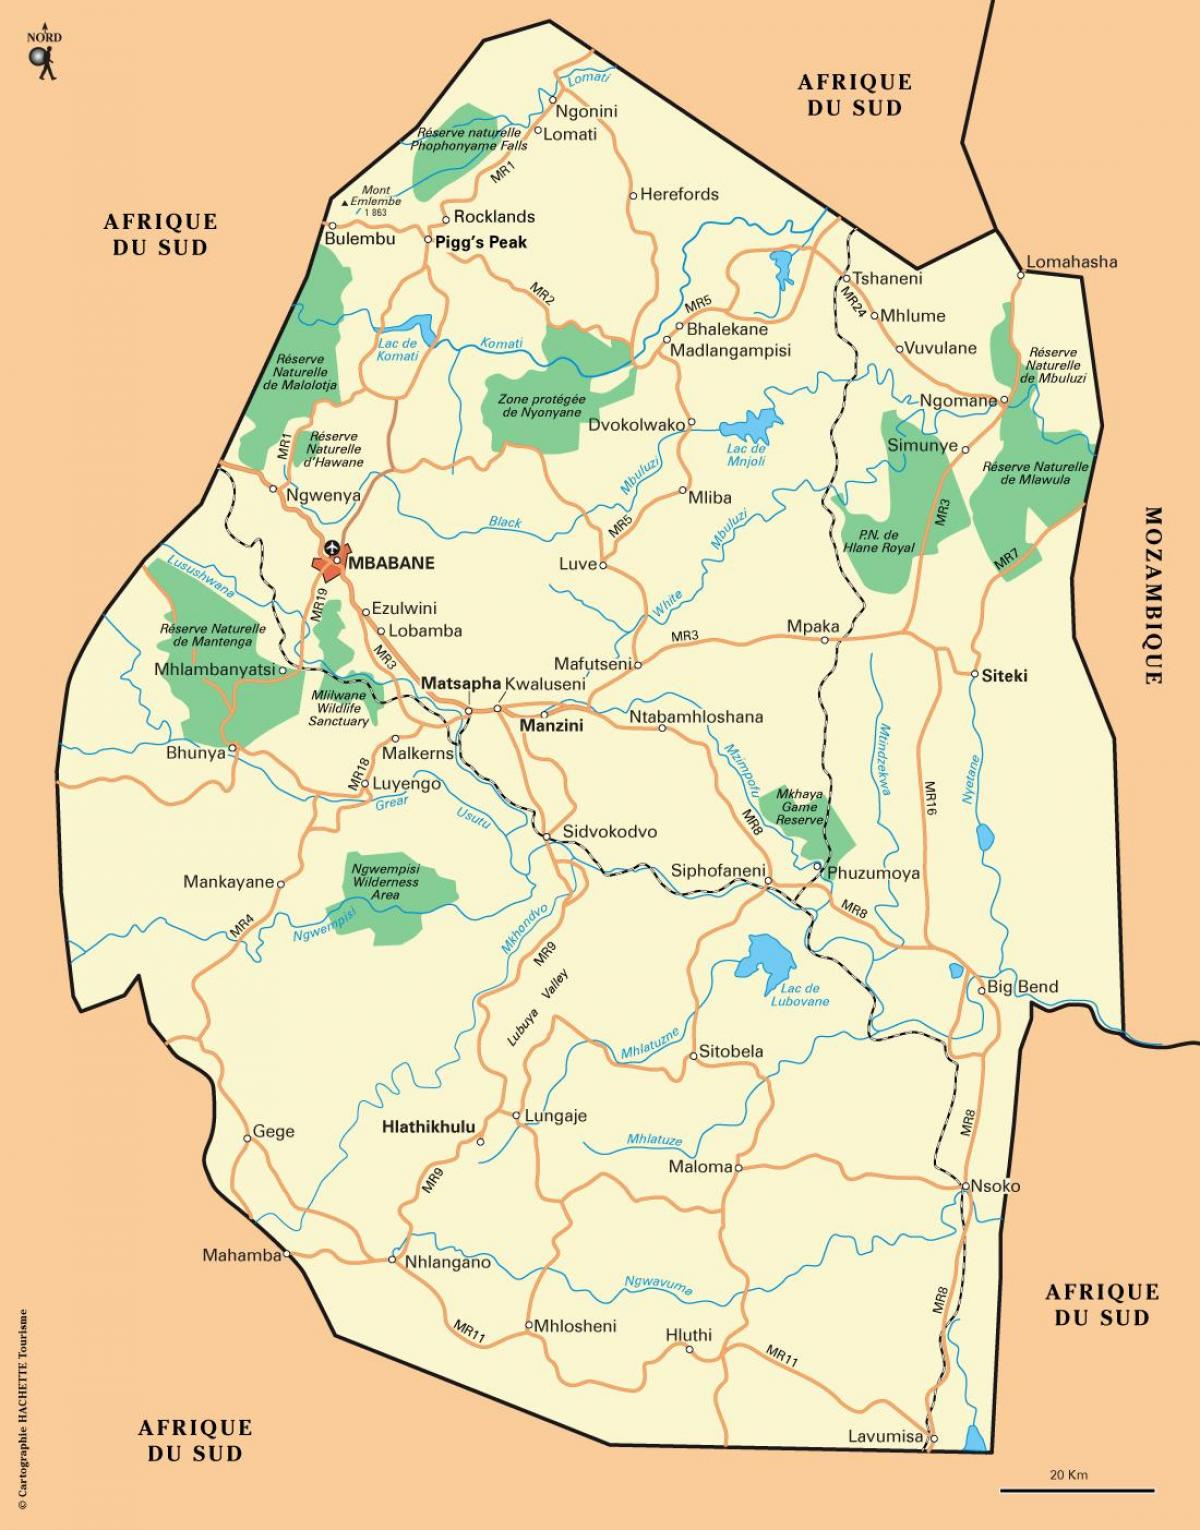 ezulwini વેલી સ્વાઝીલેન્ડ નકશો